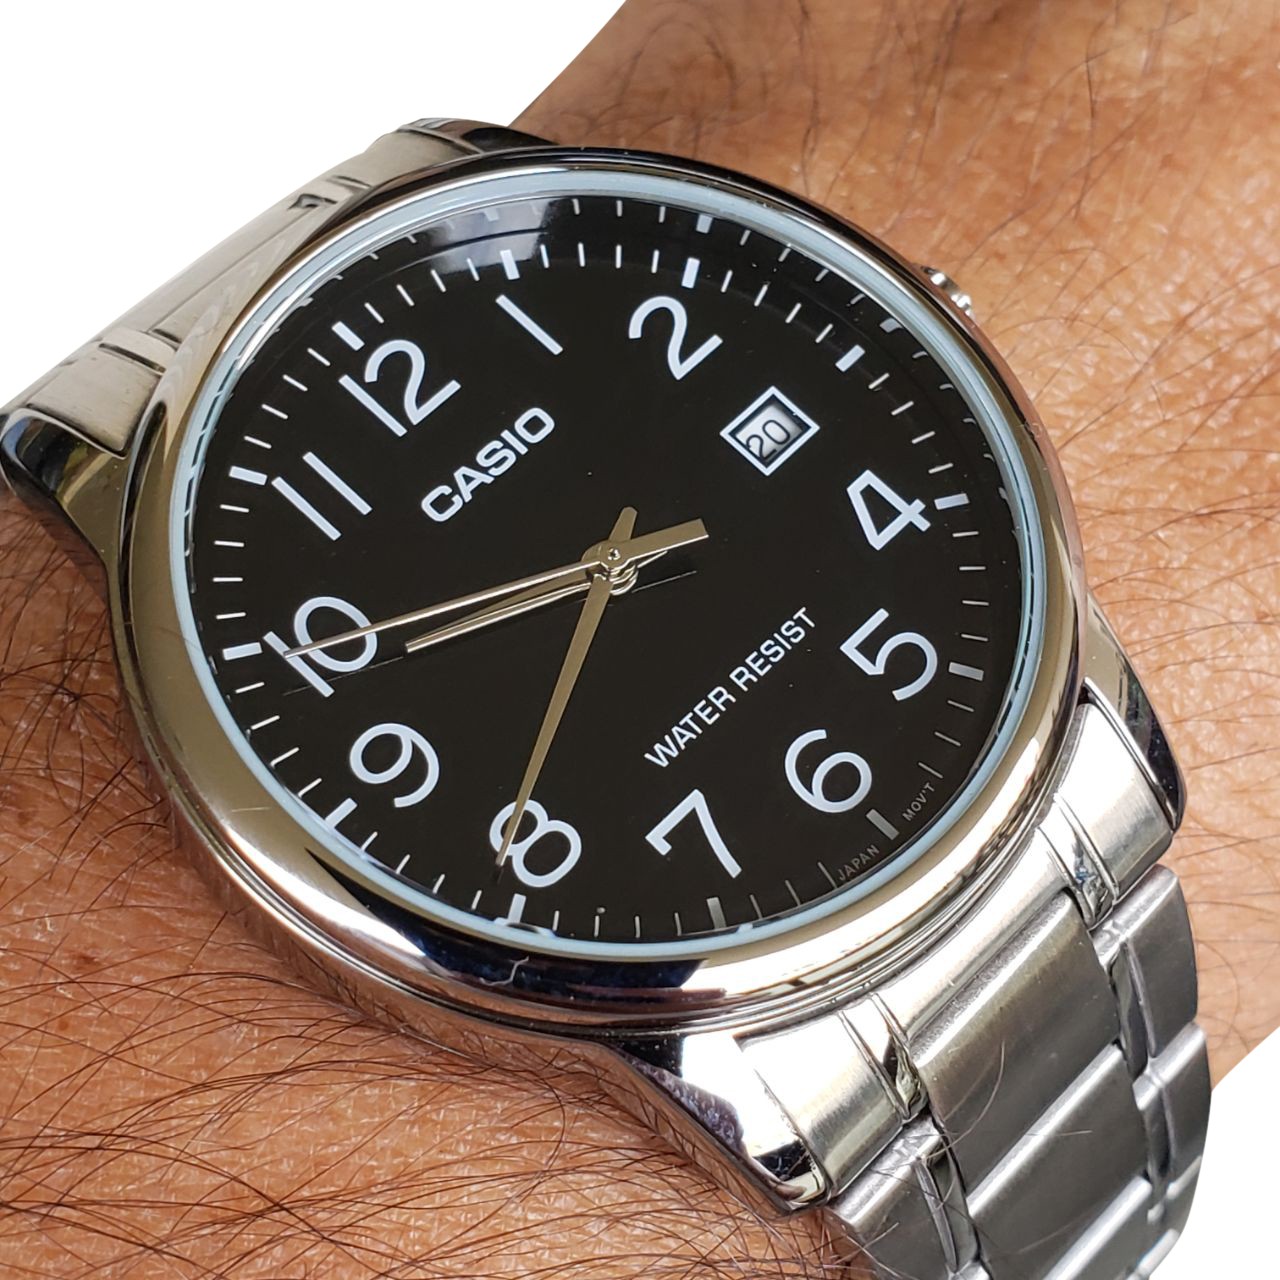 Relógio Masculino Casio Analógico Mtp-v002d-1budf - Altarelojoria relógios  originais invicta orient casio e muito mais.